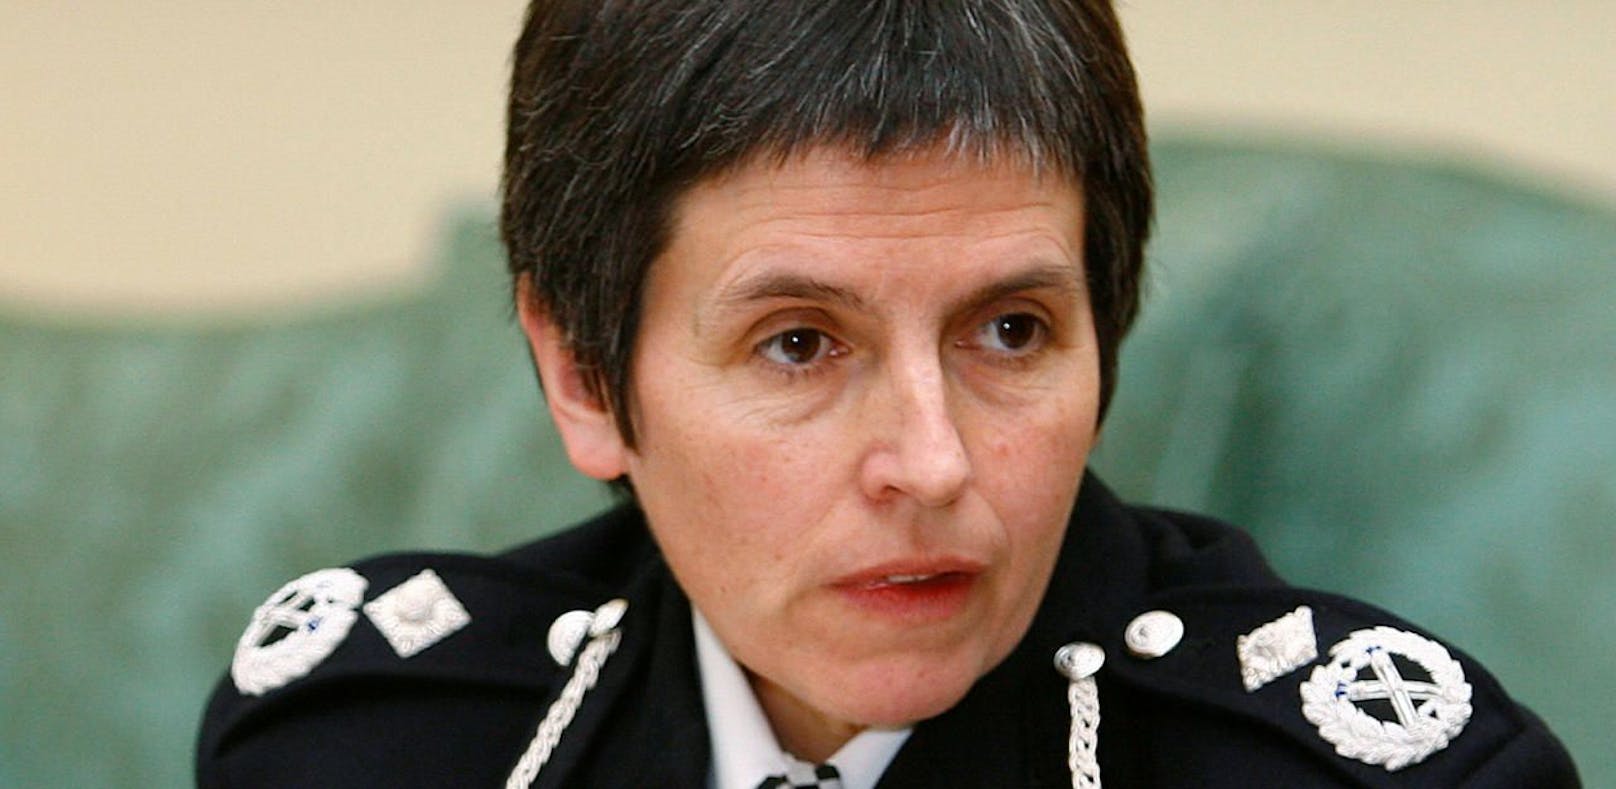 Cressida Jones, neue Chefin der Londoner Polizei.